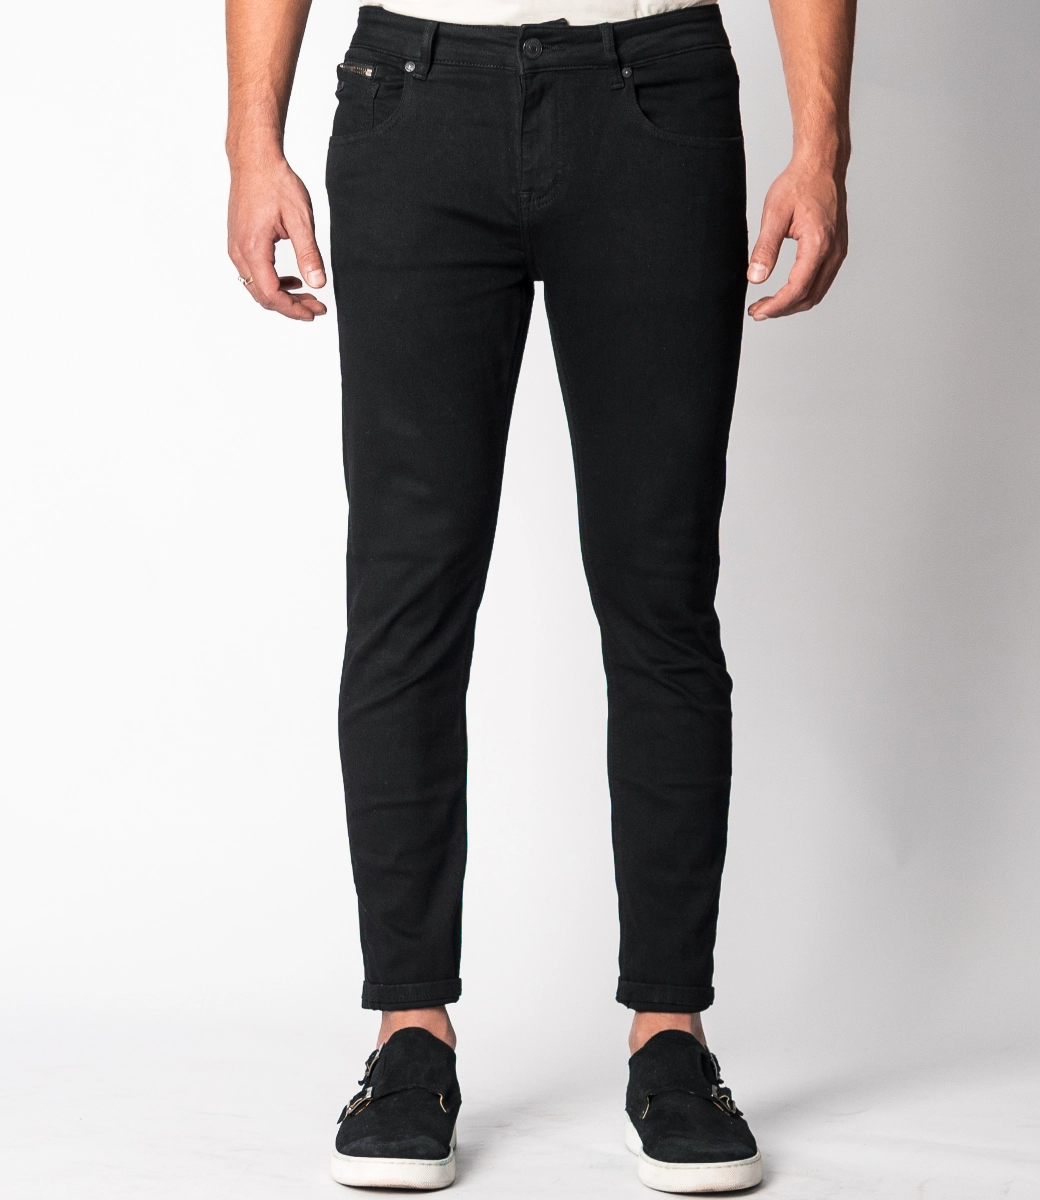 RYAN-V-SOLID Black - Slim Fit Jeans